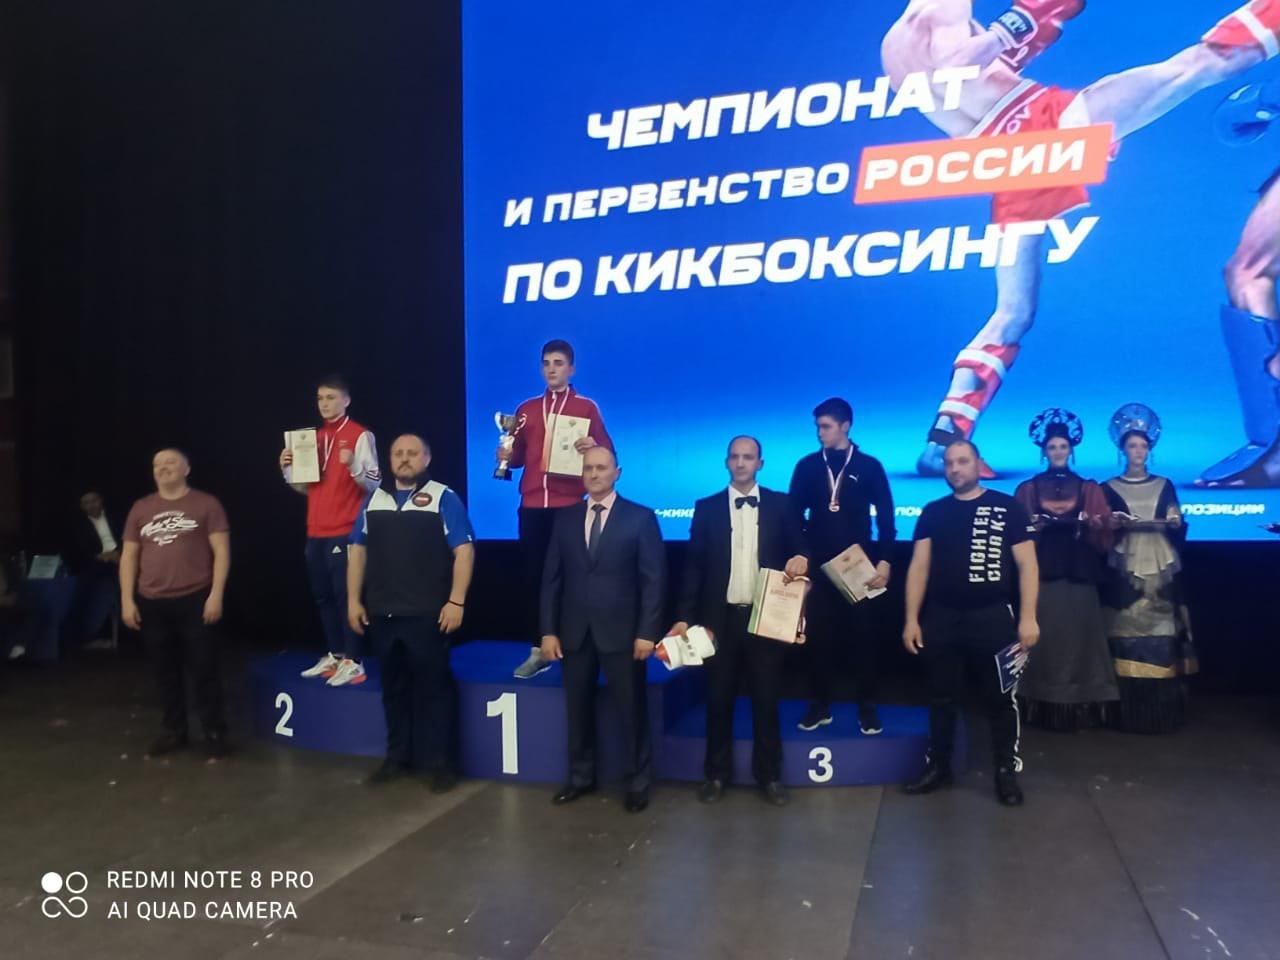 Коломенцы привезли медали с первенства России по кикбоксингу